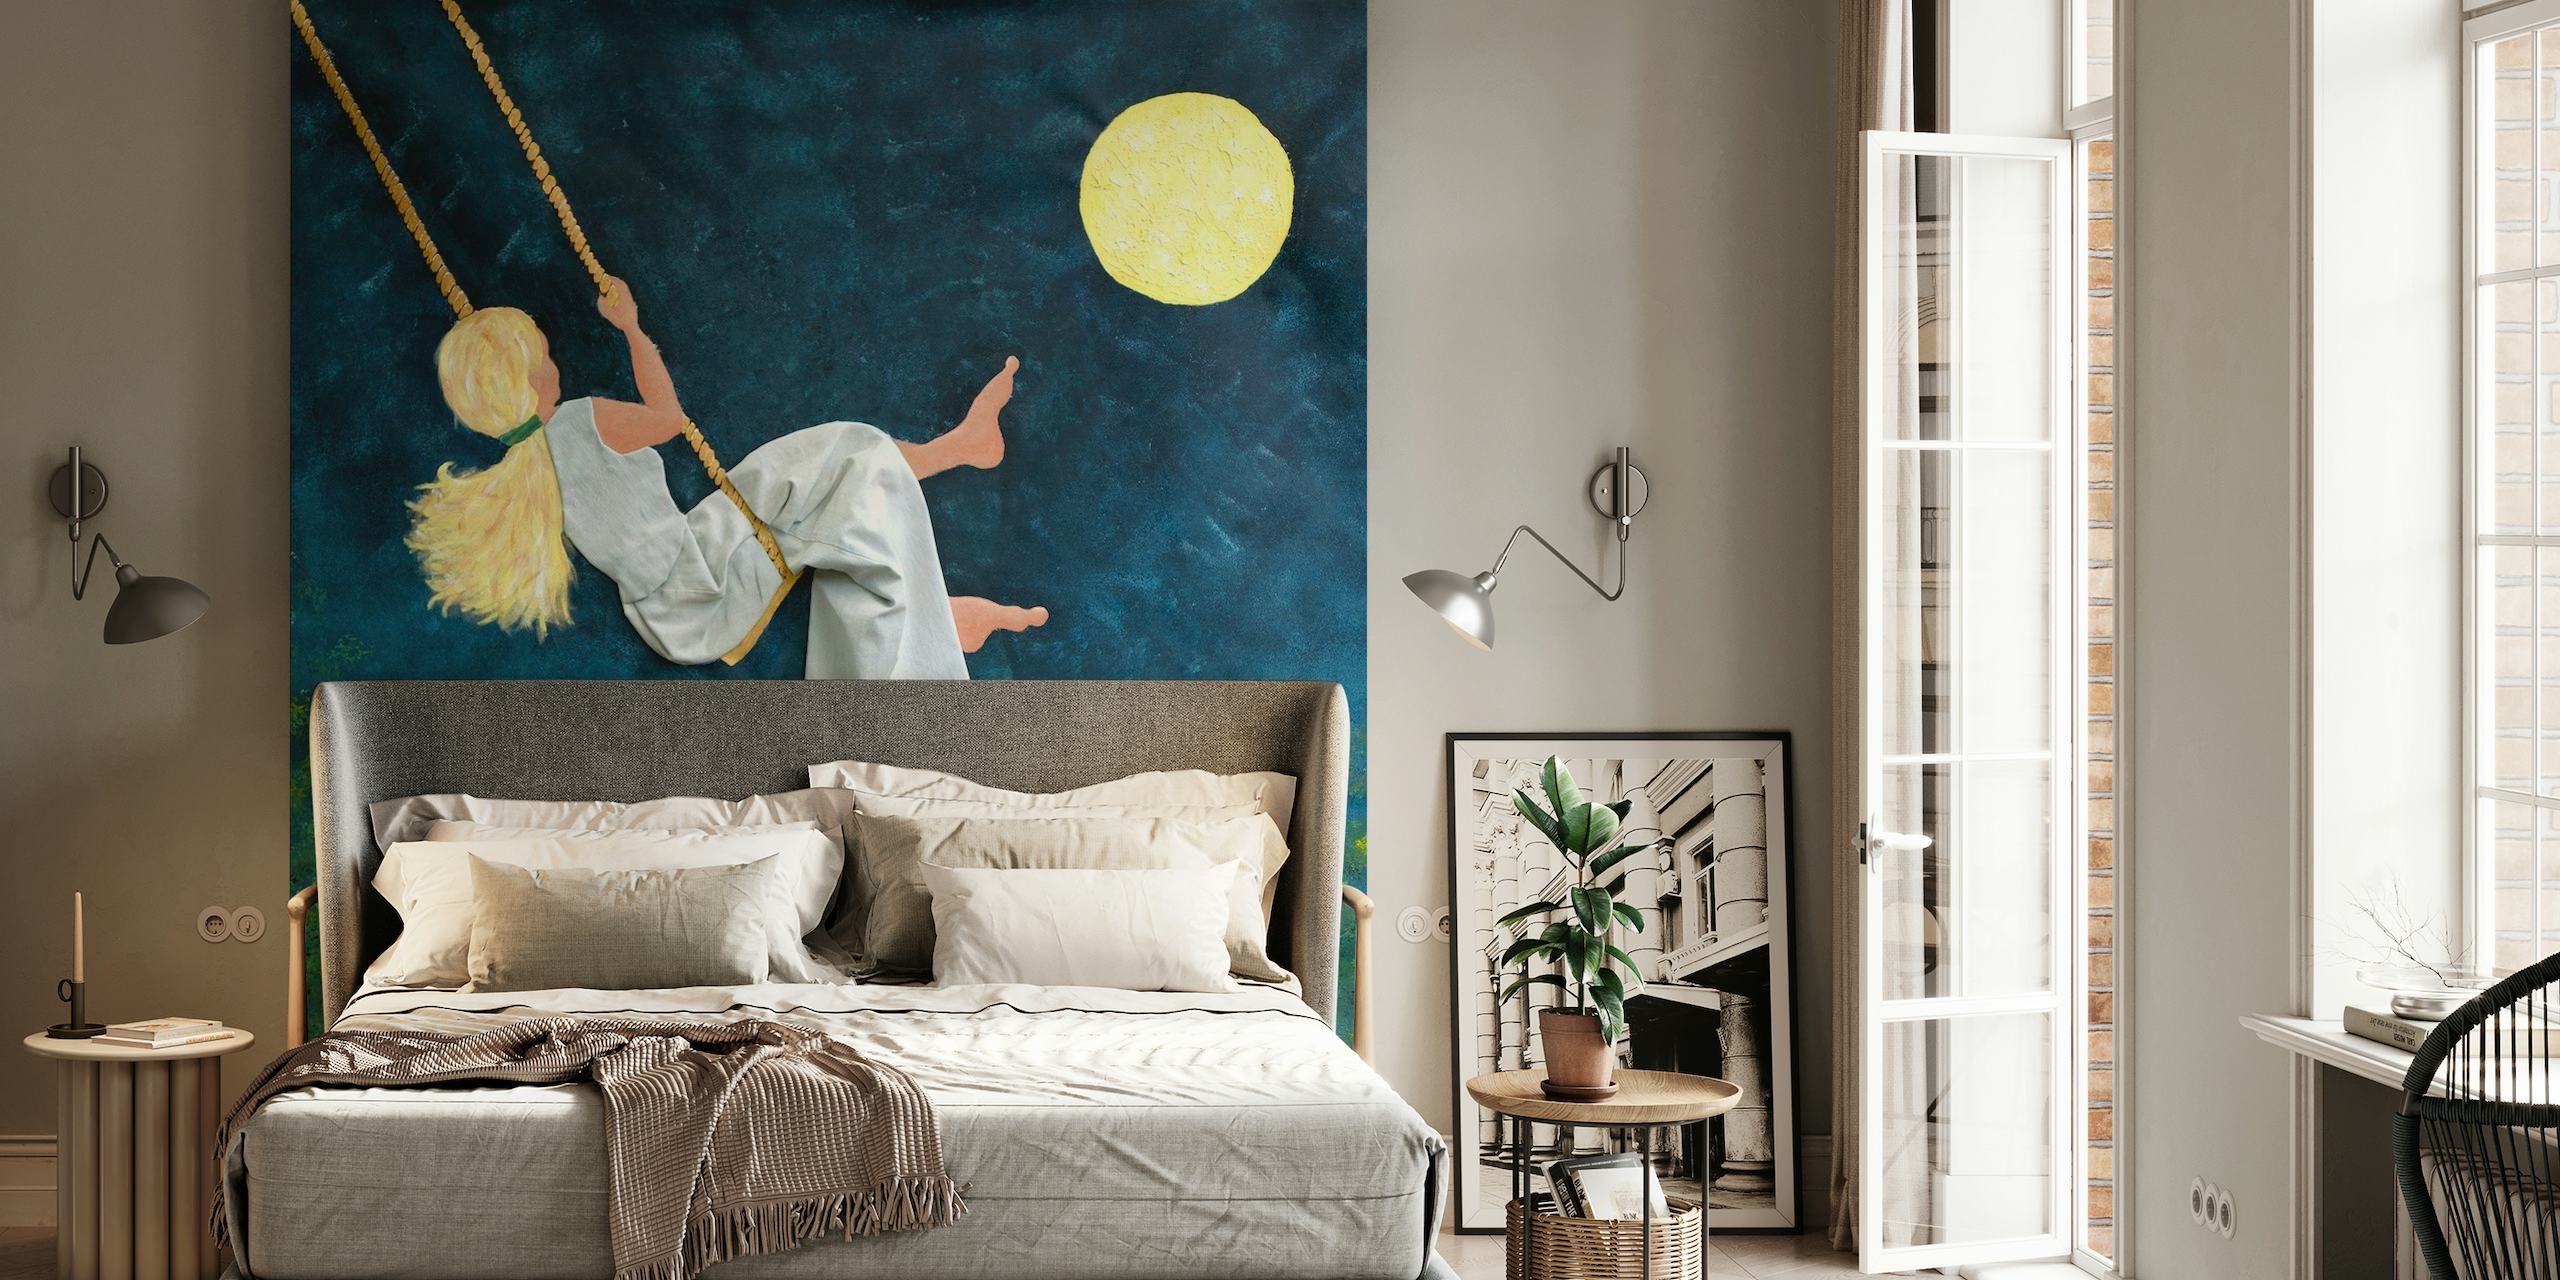 Meisje dat naar de maan zwaait op een fotobehang met sterrennacht